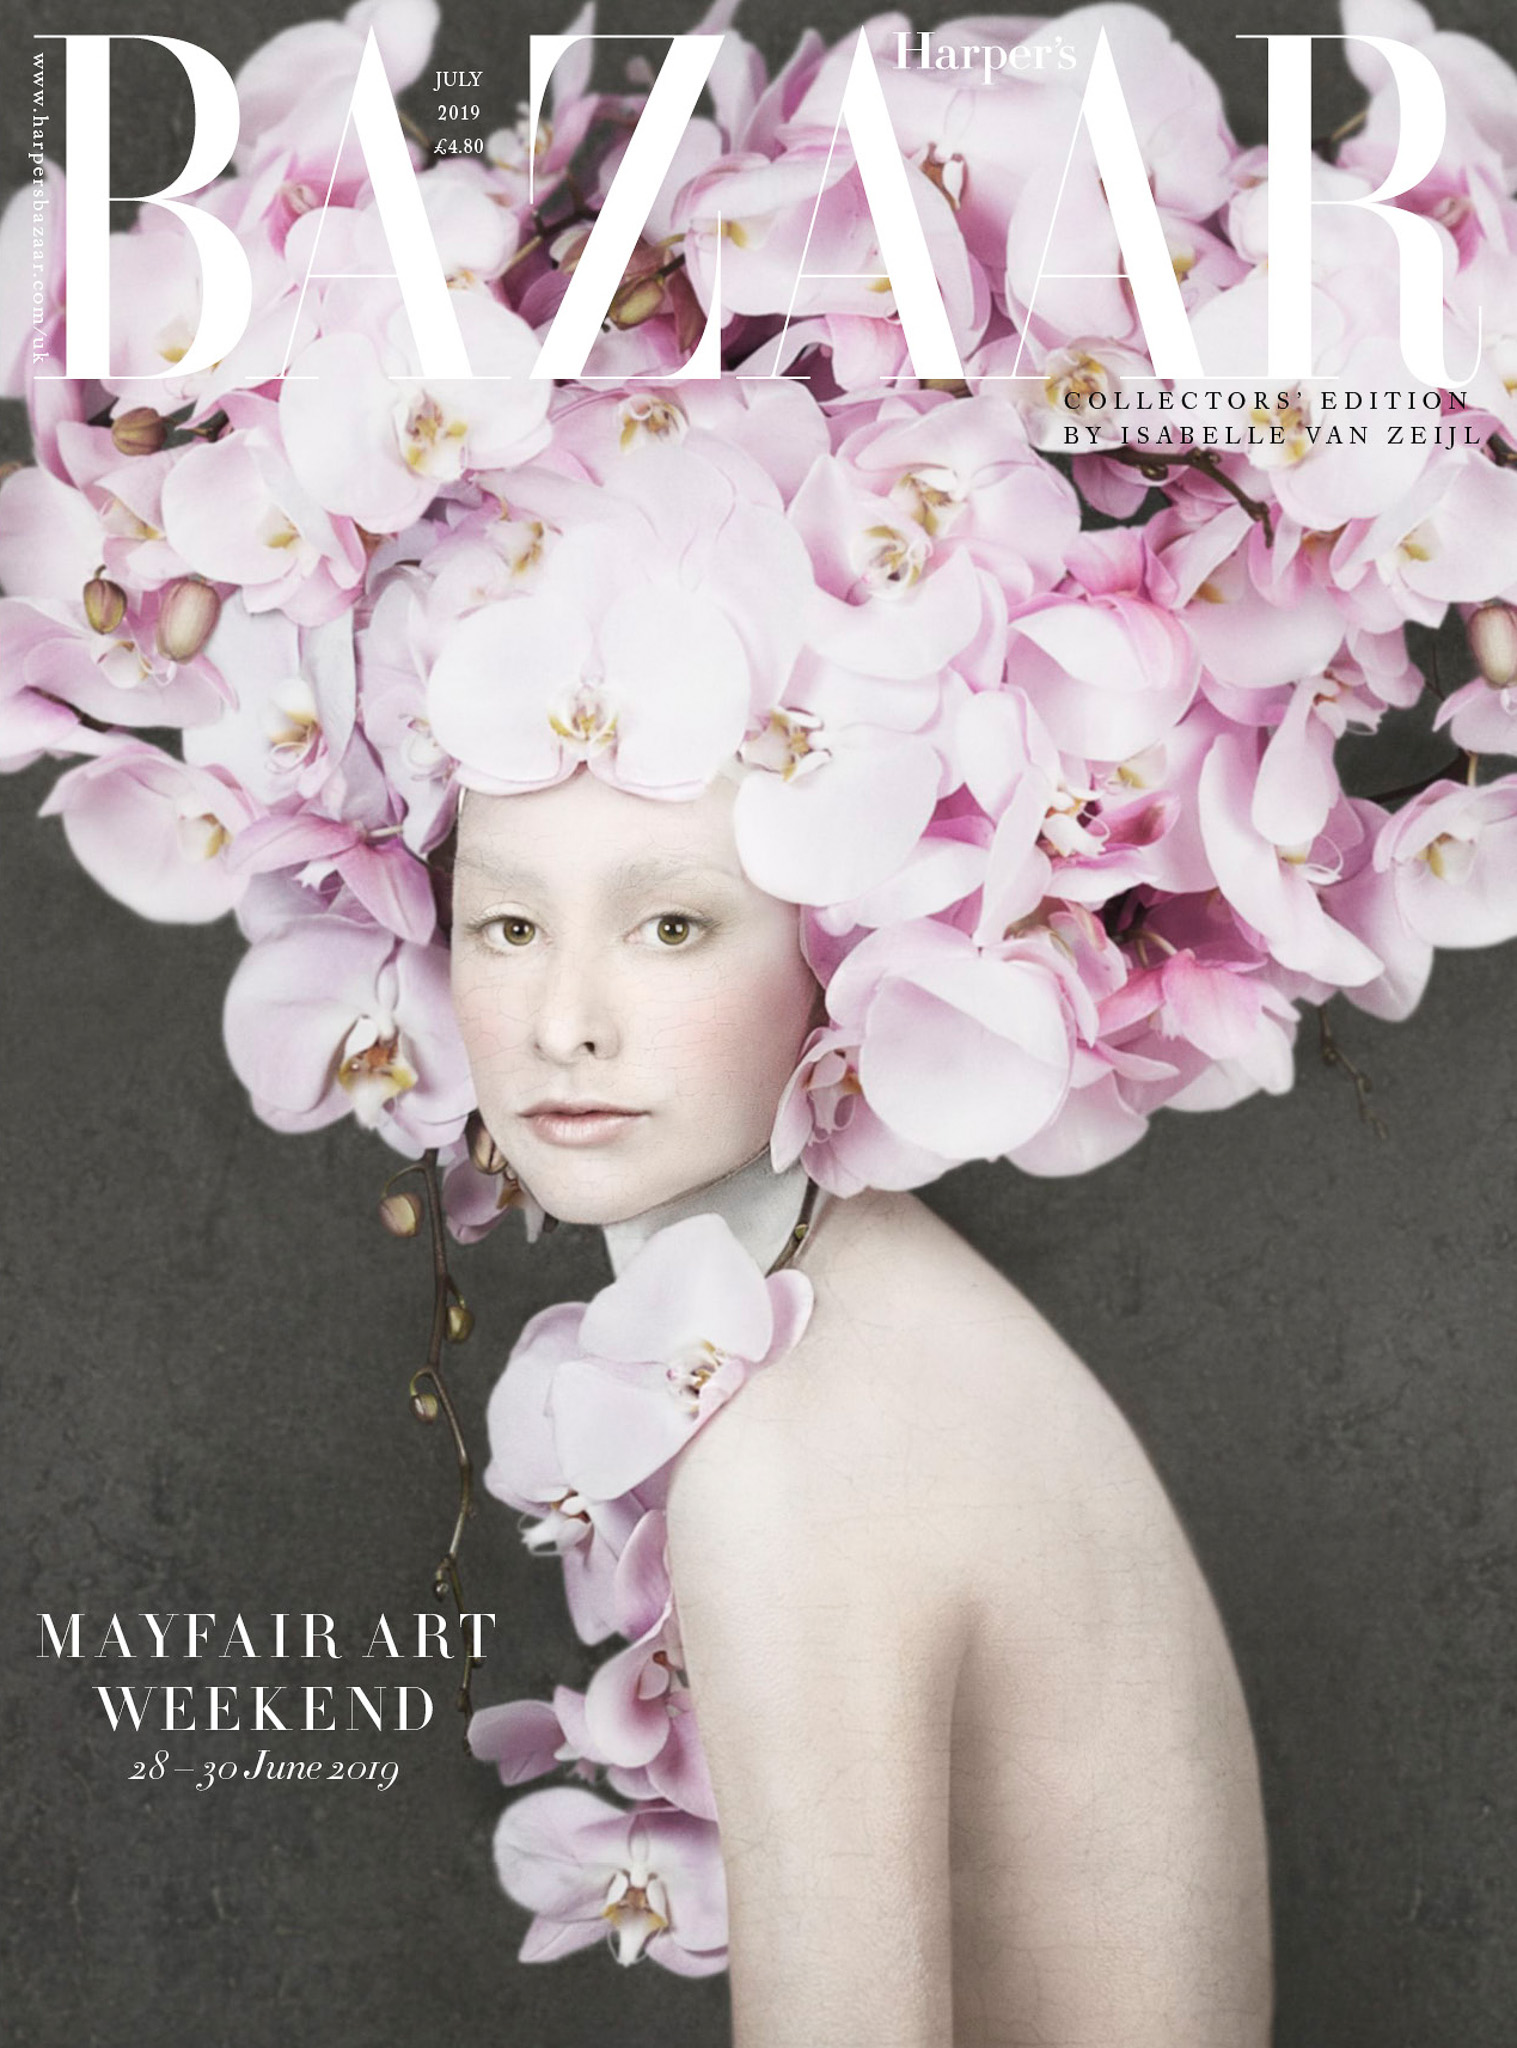 The Wick - Isabelle van Zeijl's work on cover of Harpers Bazaar, courtesy of the artist.